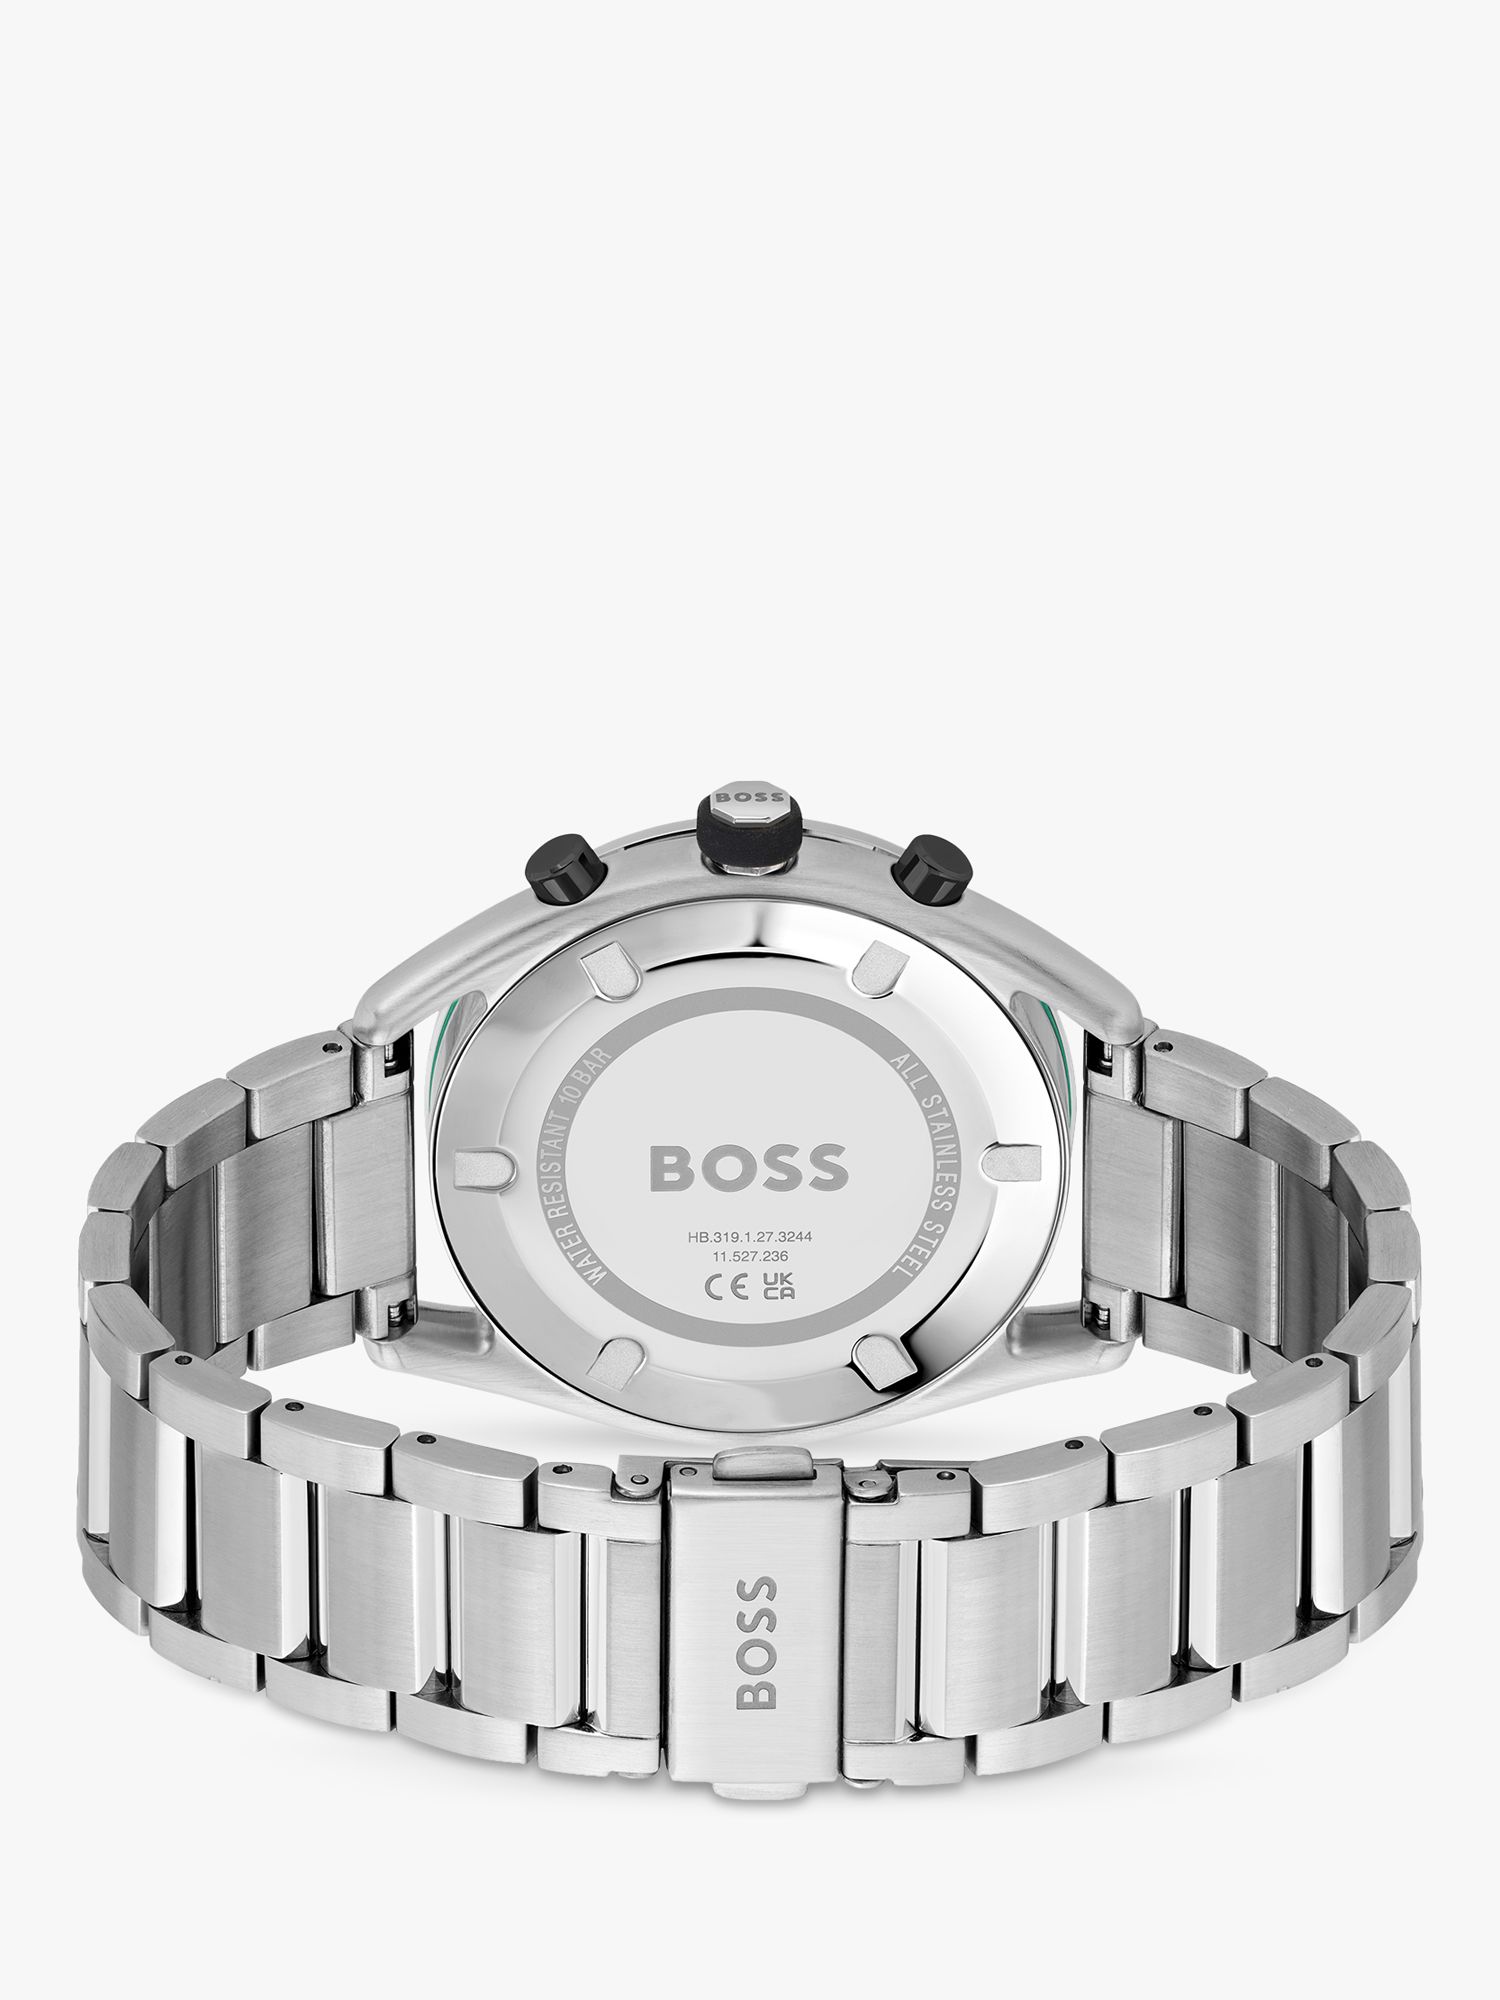 Strap Chronograph BOSS 1514023 Court Men\'s Watch, Silver/Black Bracelet Centre